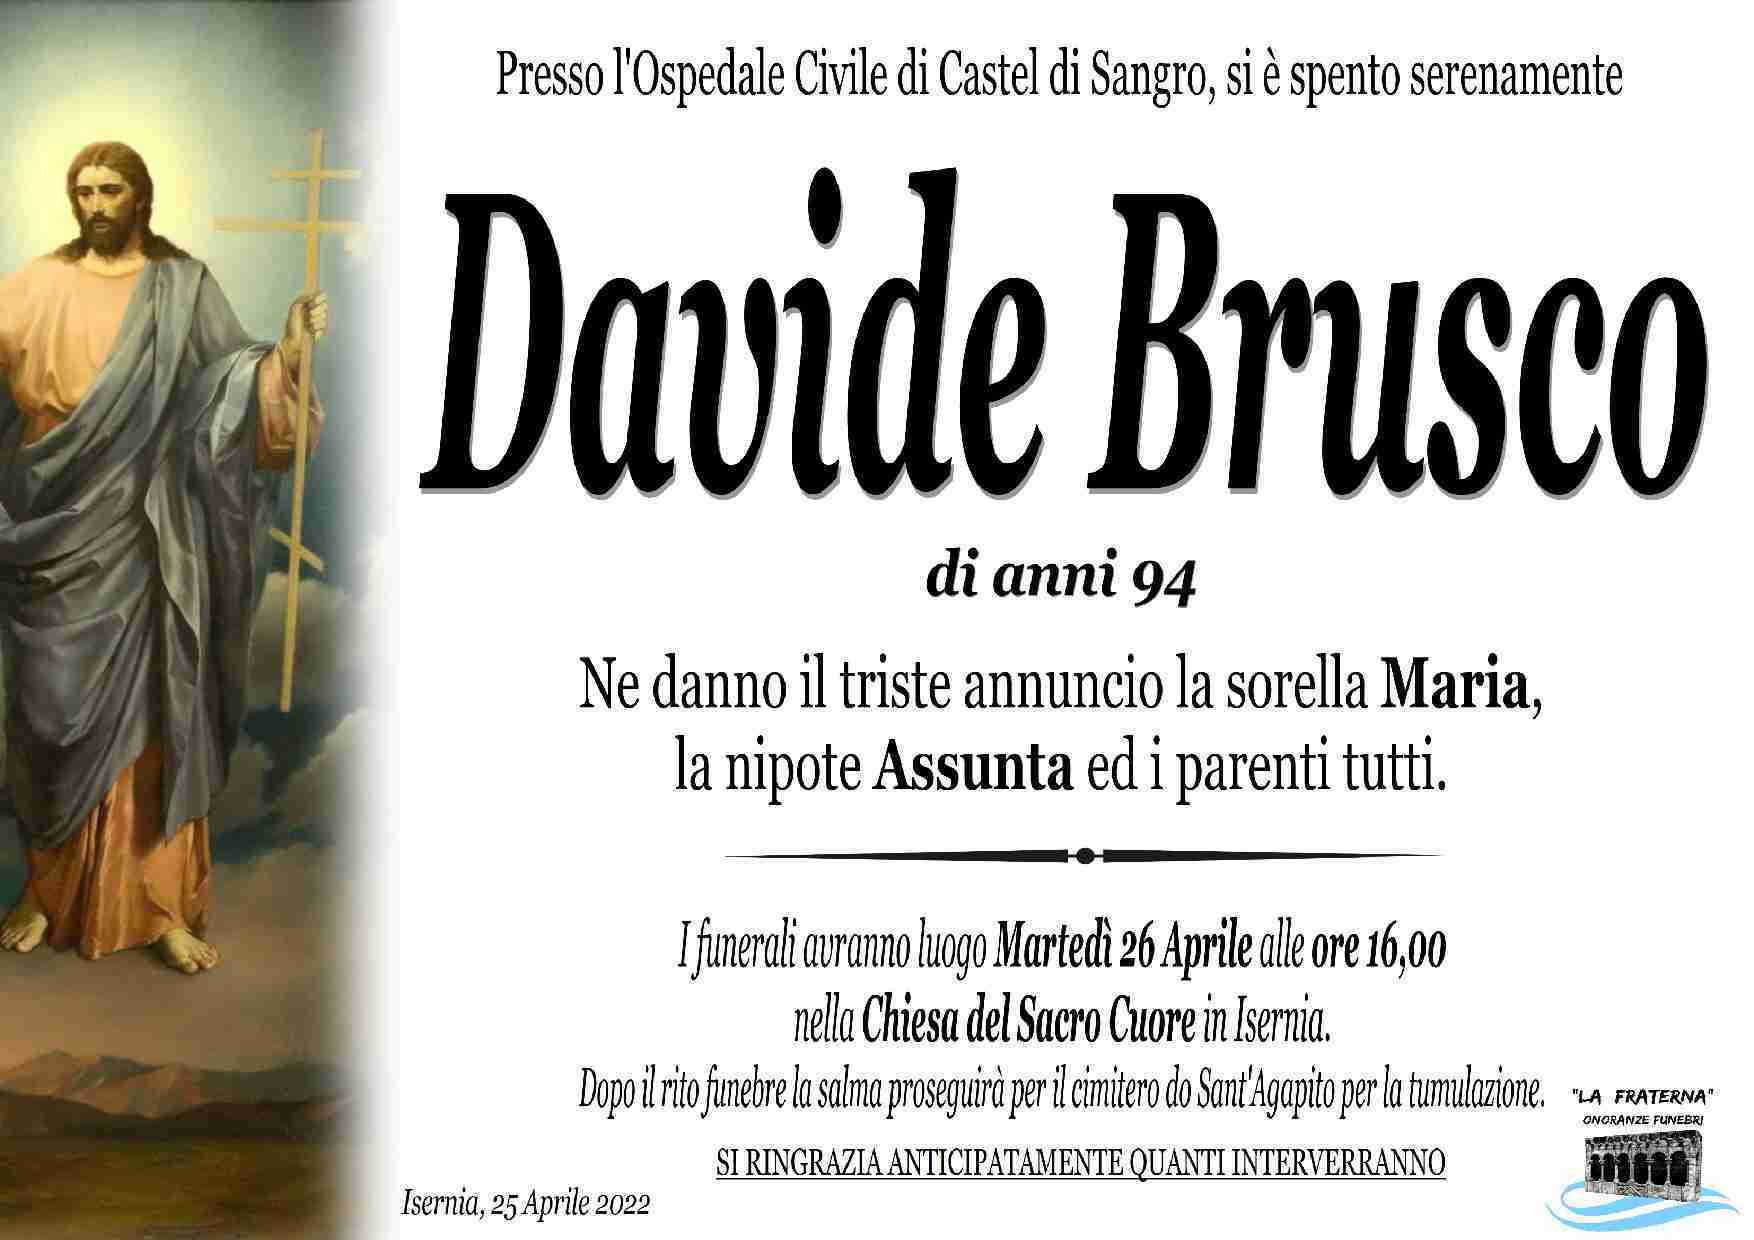 Davide Brusco